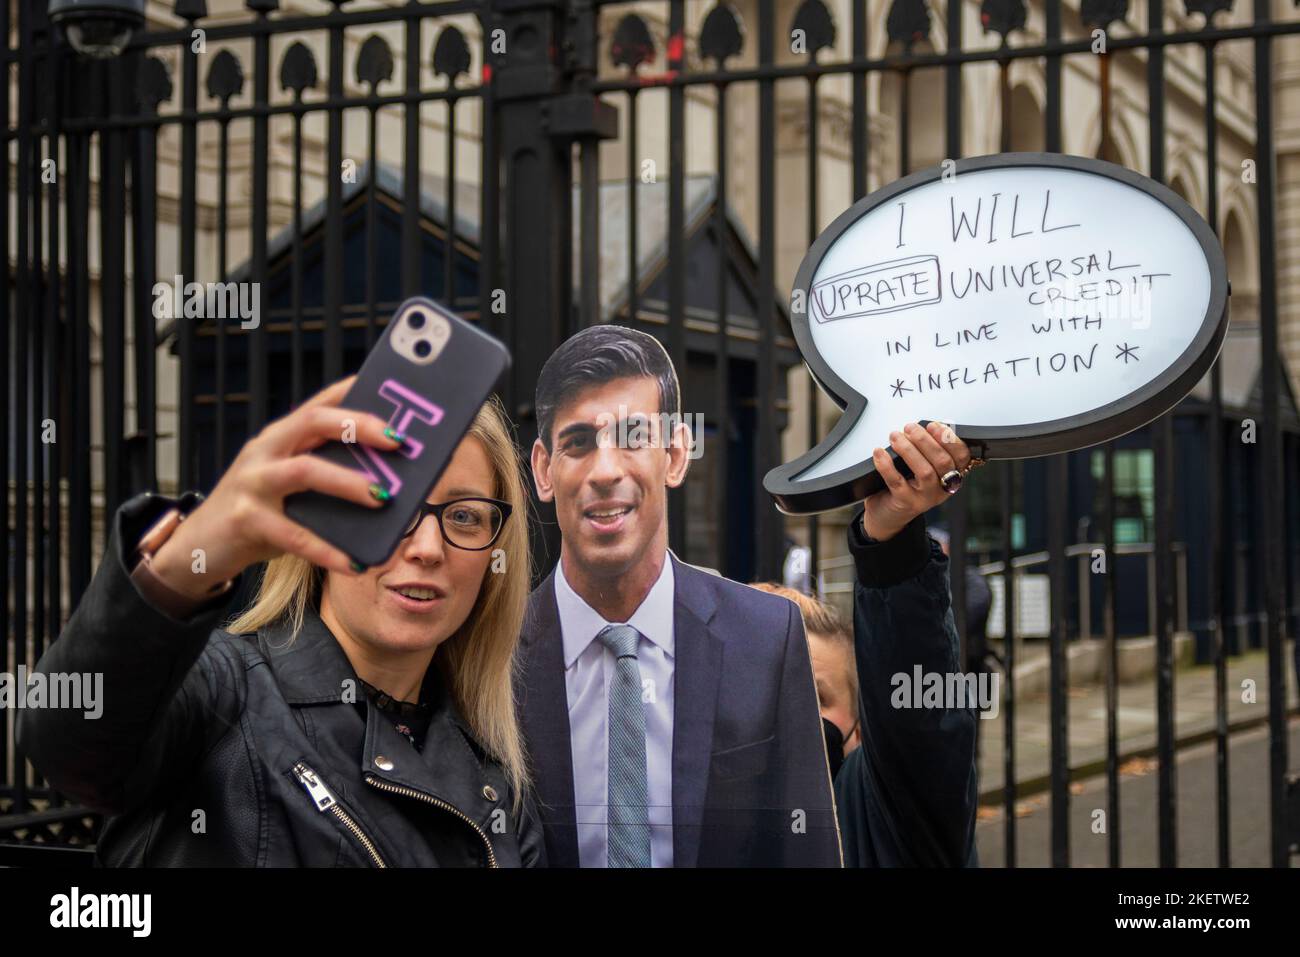 Whitehall, Westminster, Londra, Regno Unito. 14th Nov 2022. I manifestanti hanno creato una bolla di discorso per un'immagine di Rishi Sunak per evidenziare un messaggio per aumentare il credito universale in linea con l'inflazione. Citazione "riprarò il credito universale in linea con l'inflazione" Foto Stock